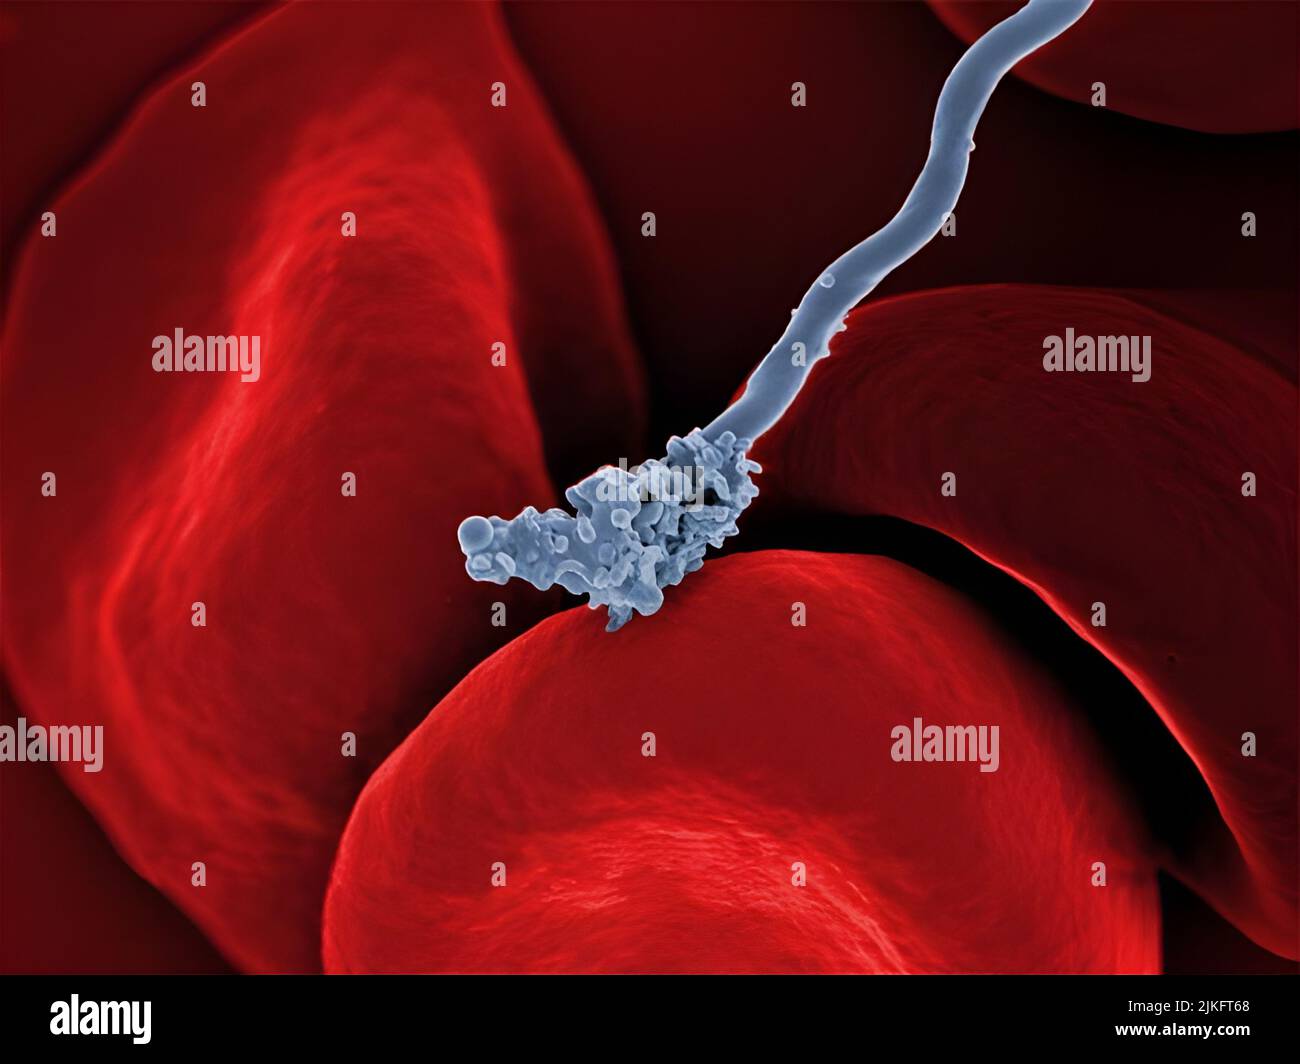 Rasterelektronenmikrographie von Borrelia hermsii, dem Erreger von schubdem Fieber, das mit roten Blutkörperchen interagiert. Stockfoto